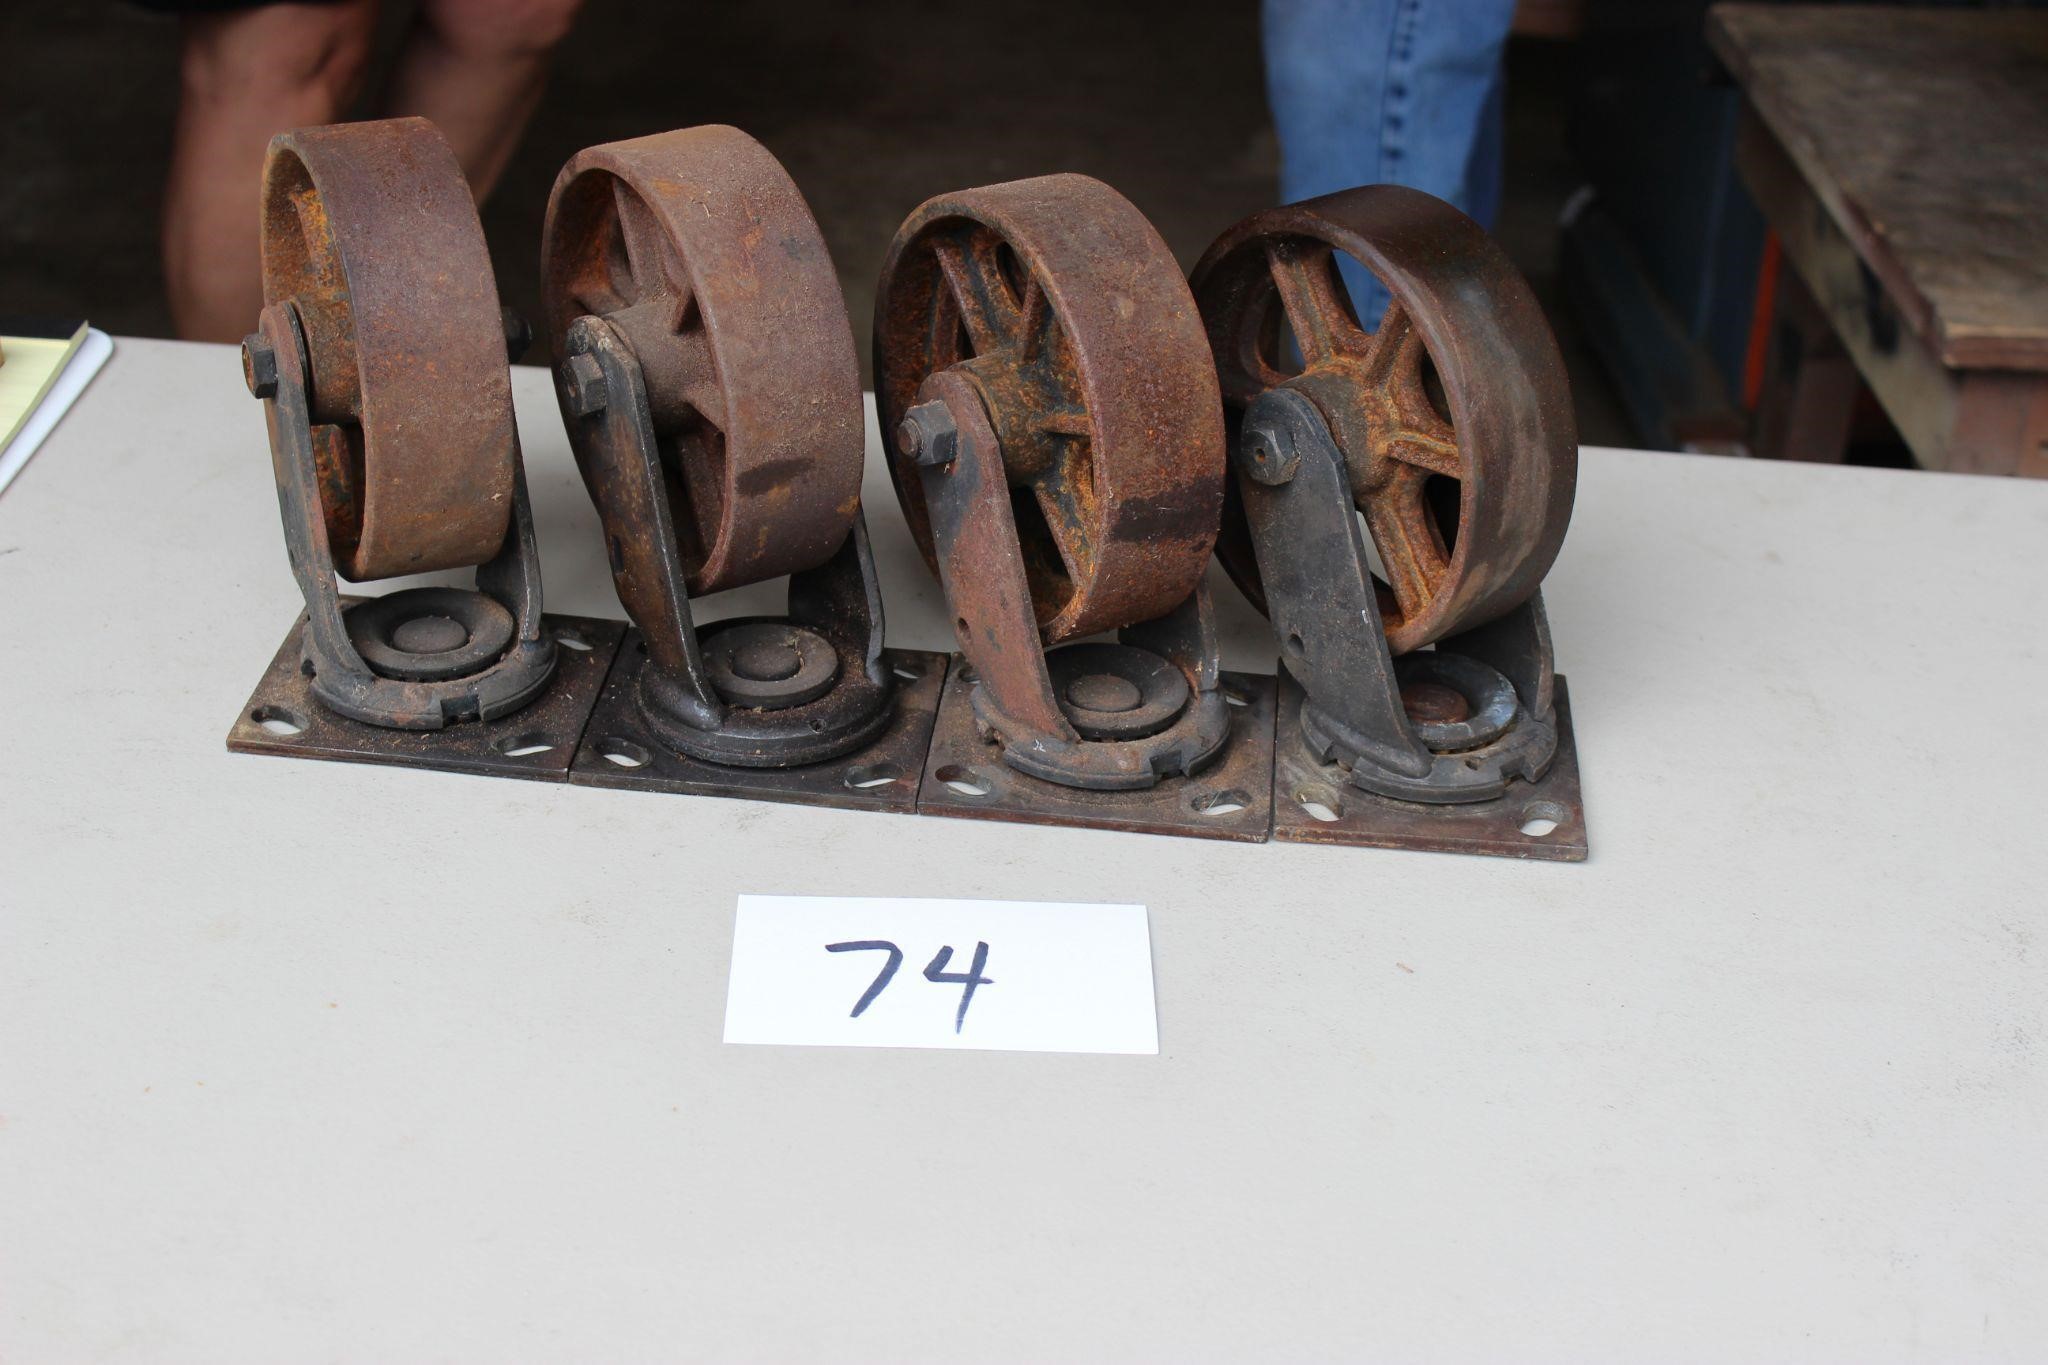 2" x 6" steel castor wheels